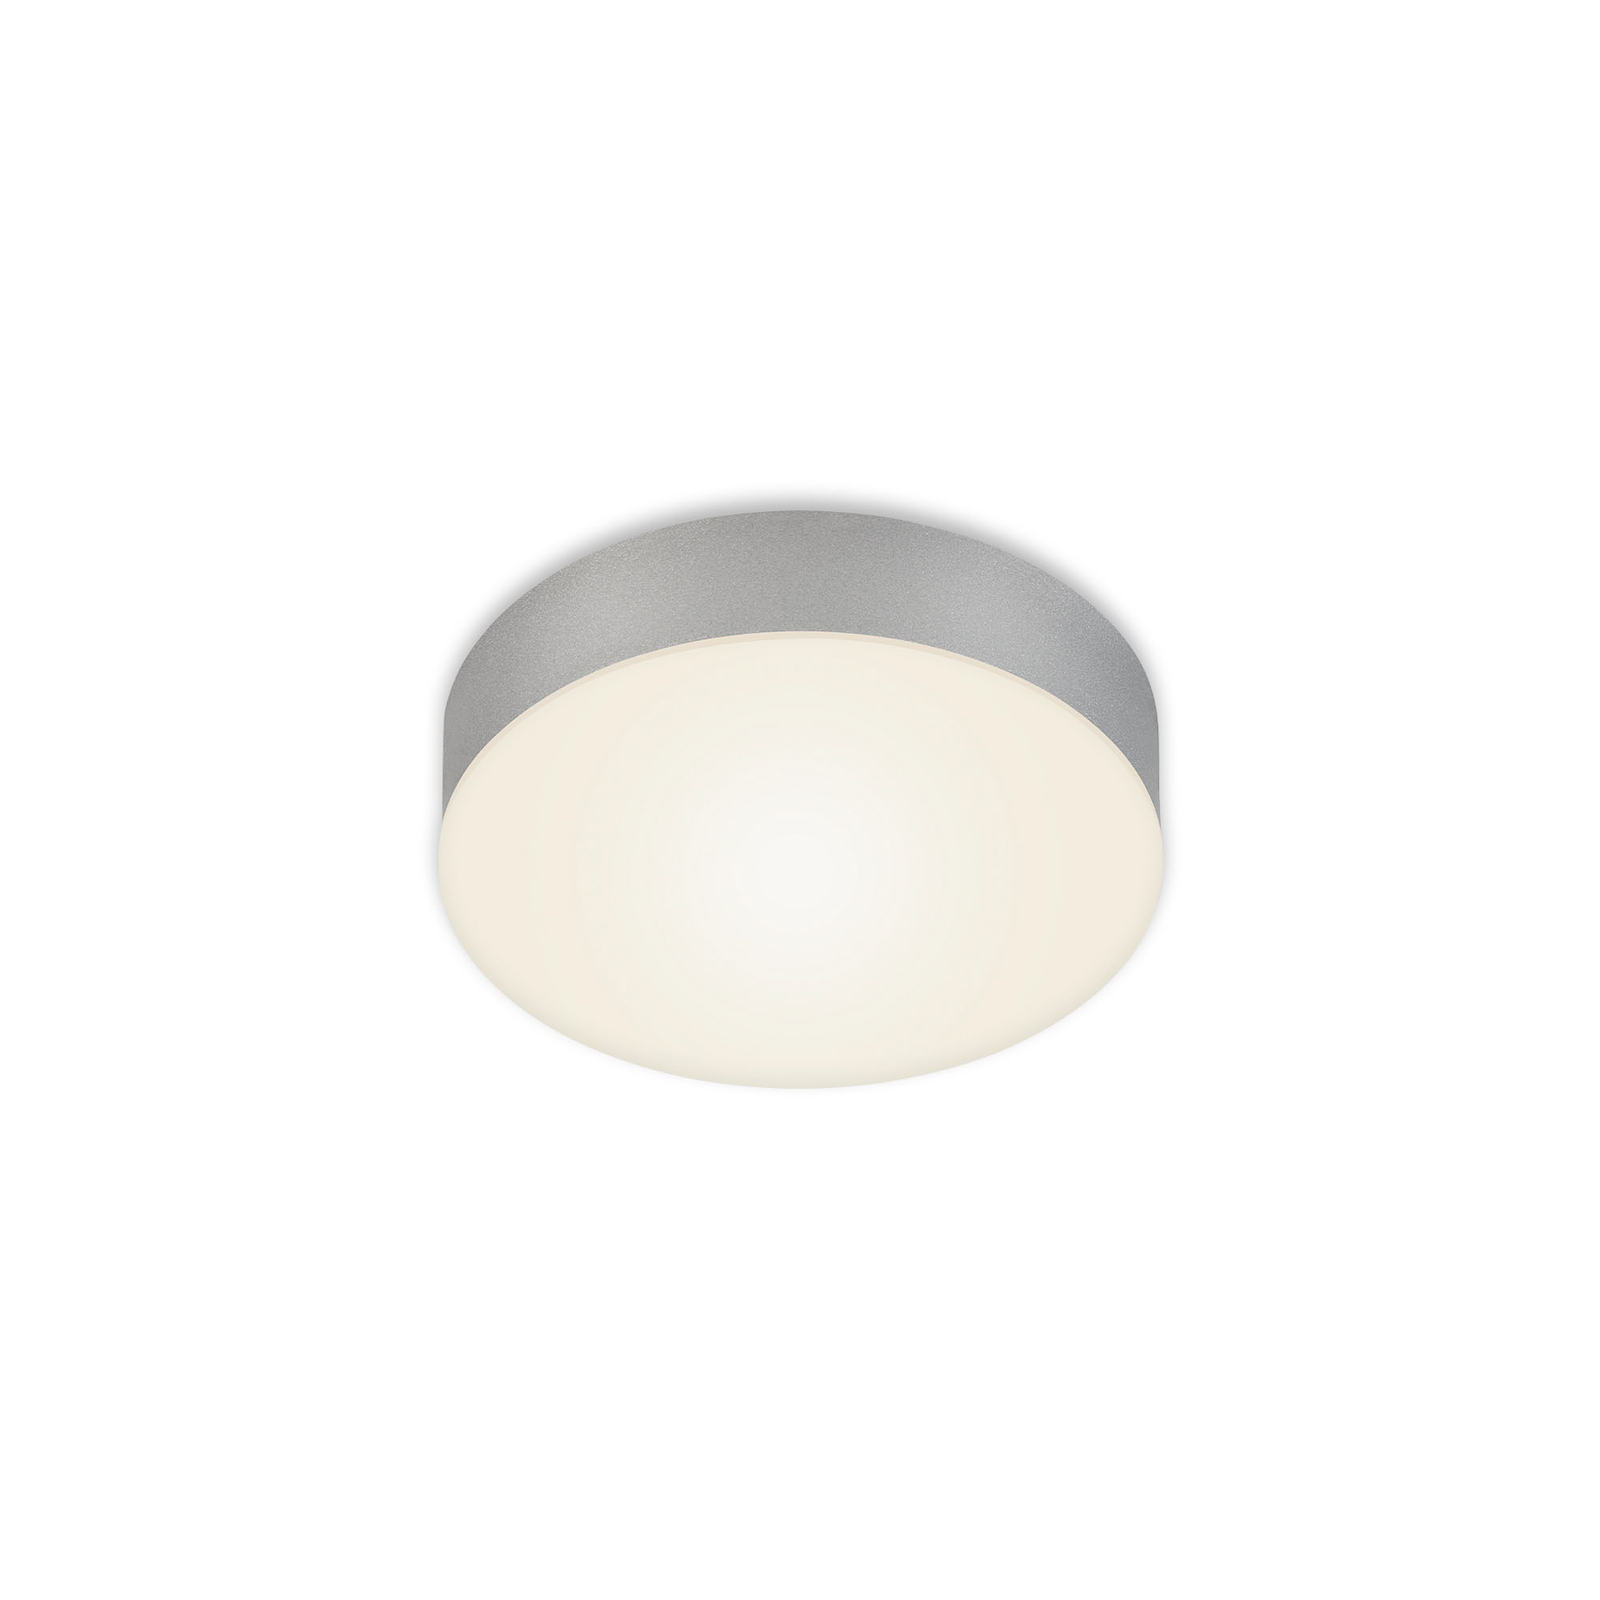 Stropní svítidlo LED Flame, Ø 15,7 cm, stříbrná barva